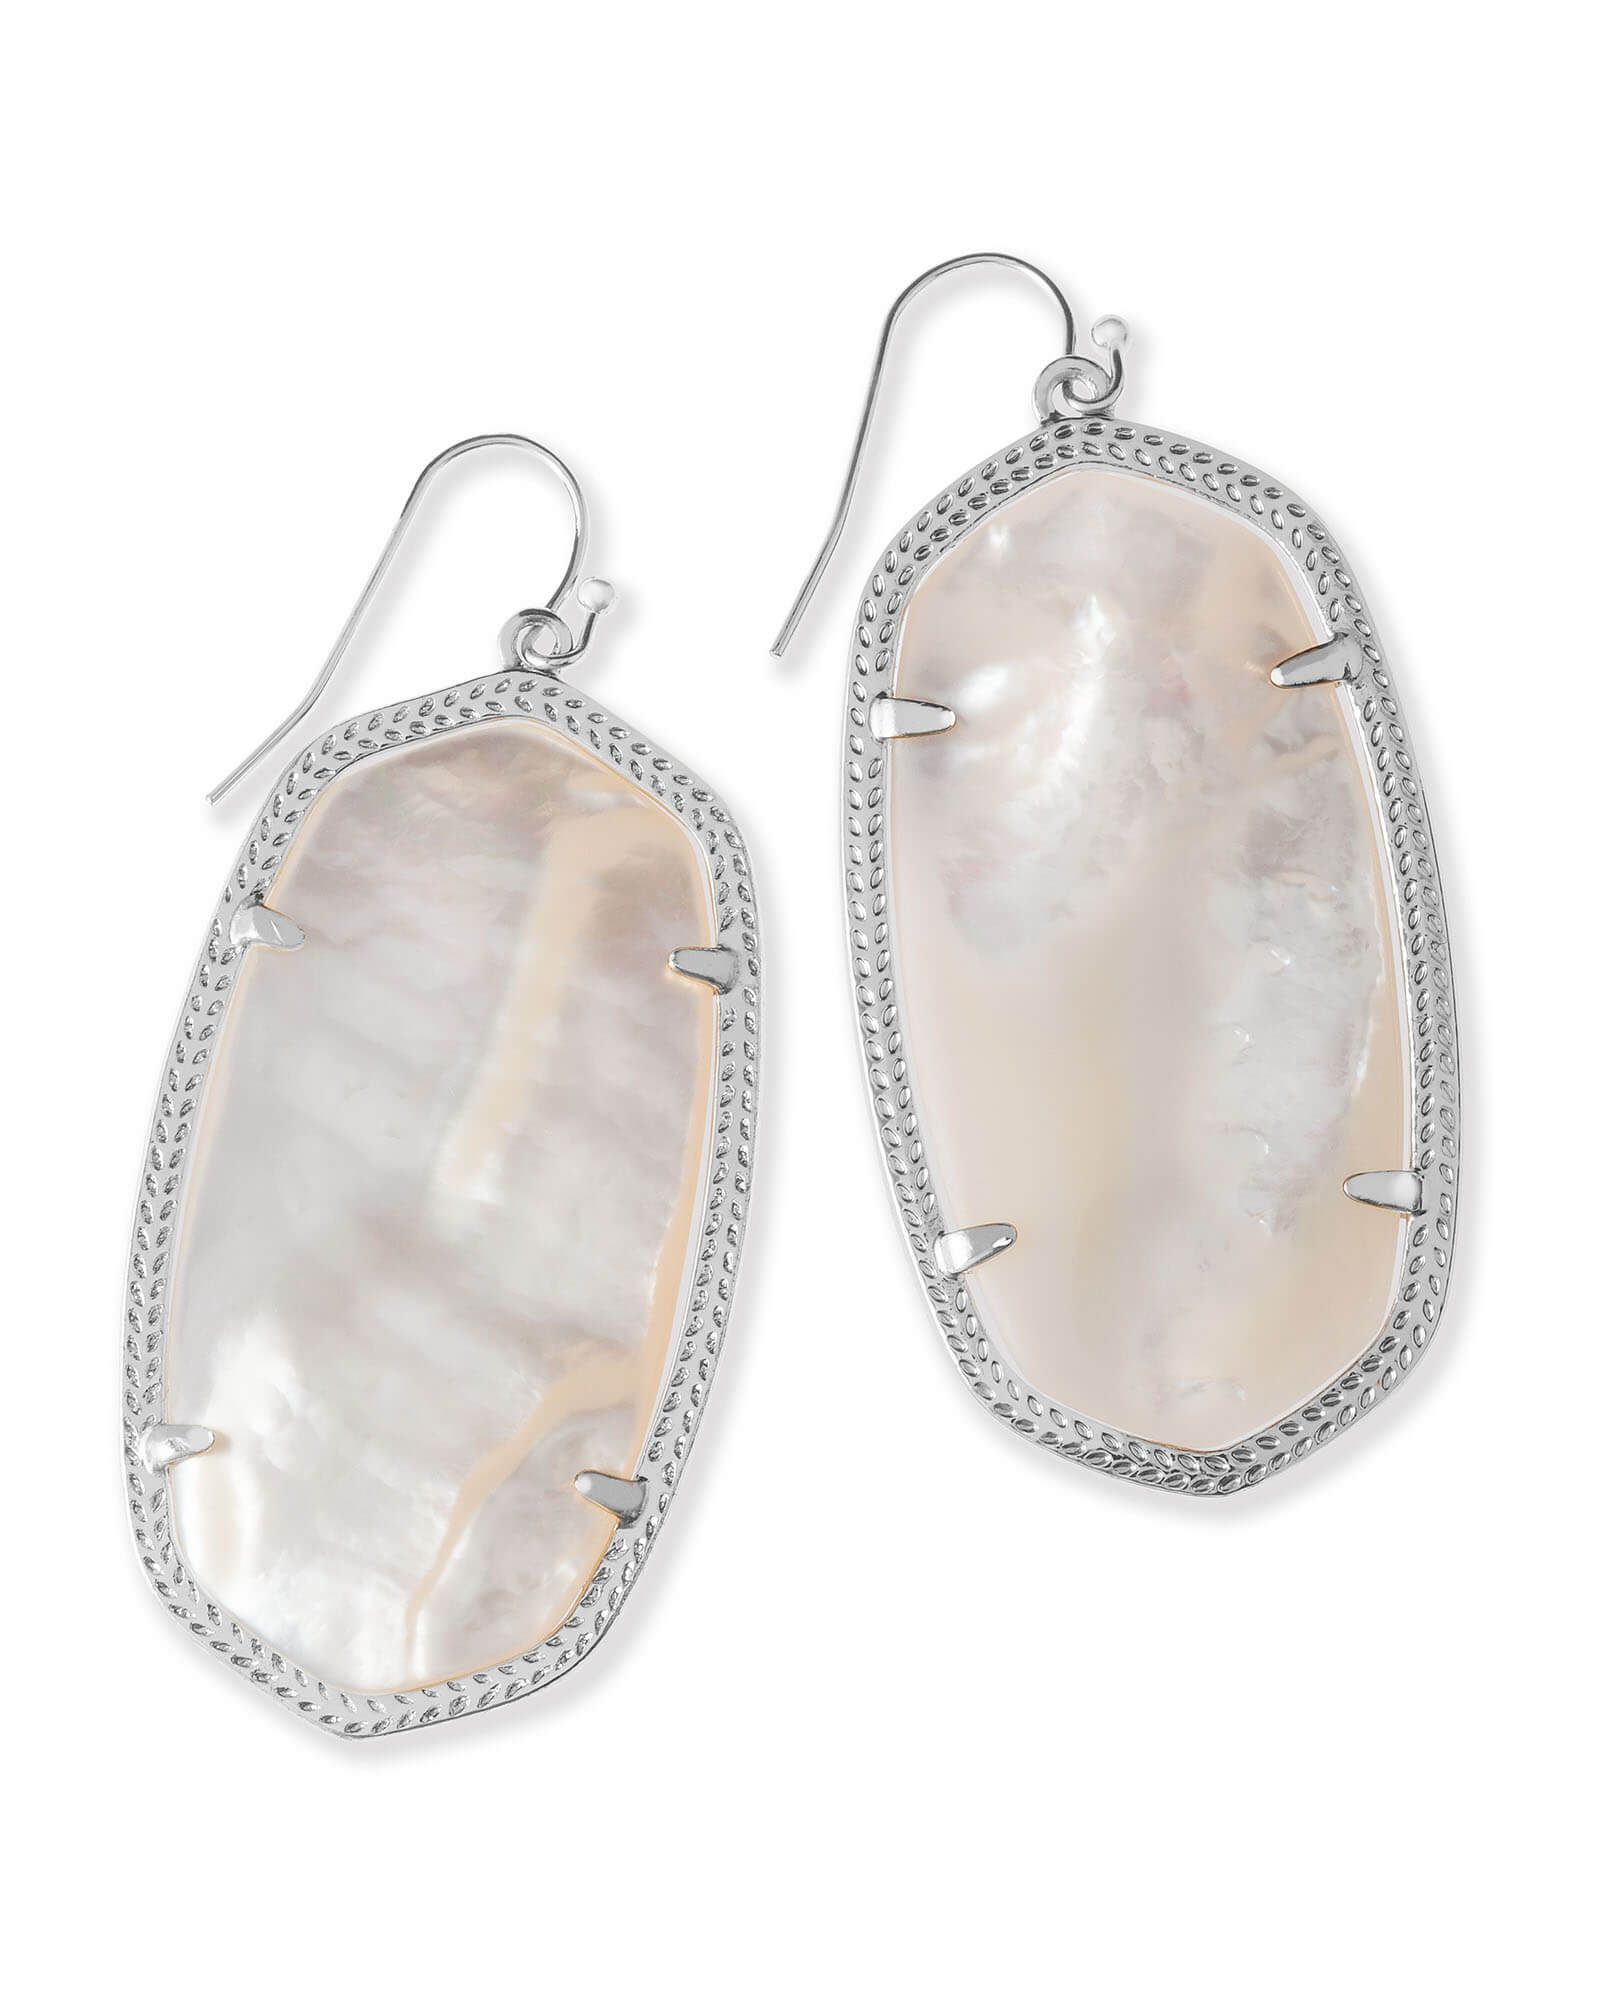 Danielle Silver Drop Earrings in Ivory Mother-of-Pearl | Kendra Scott